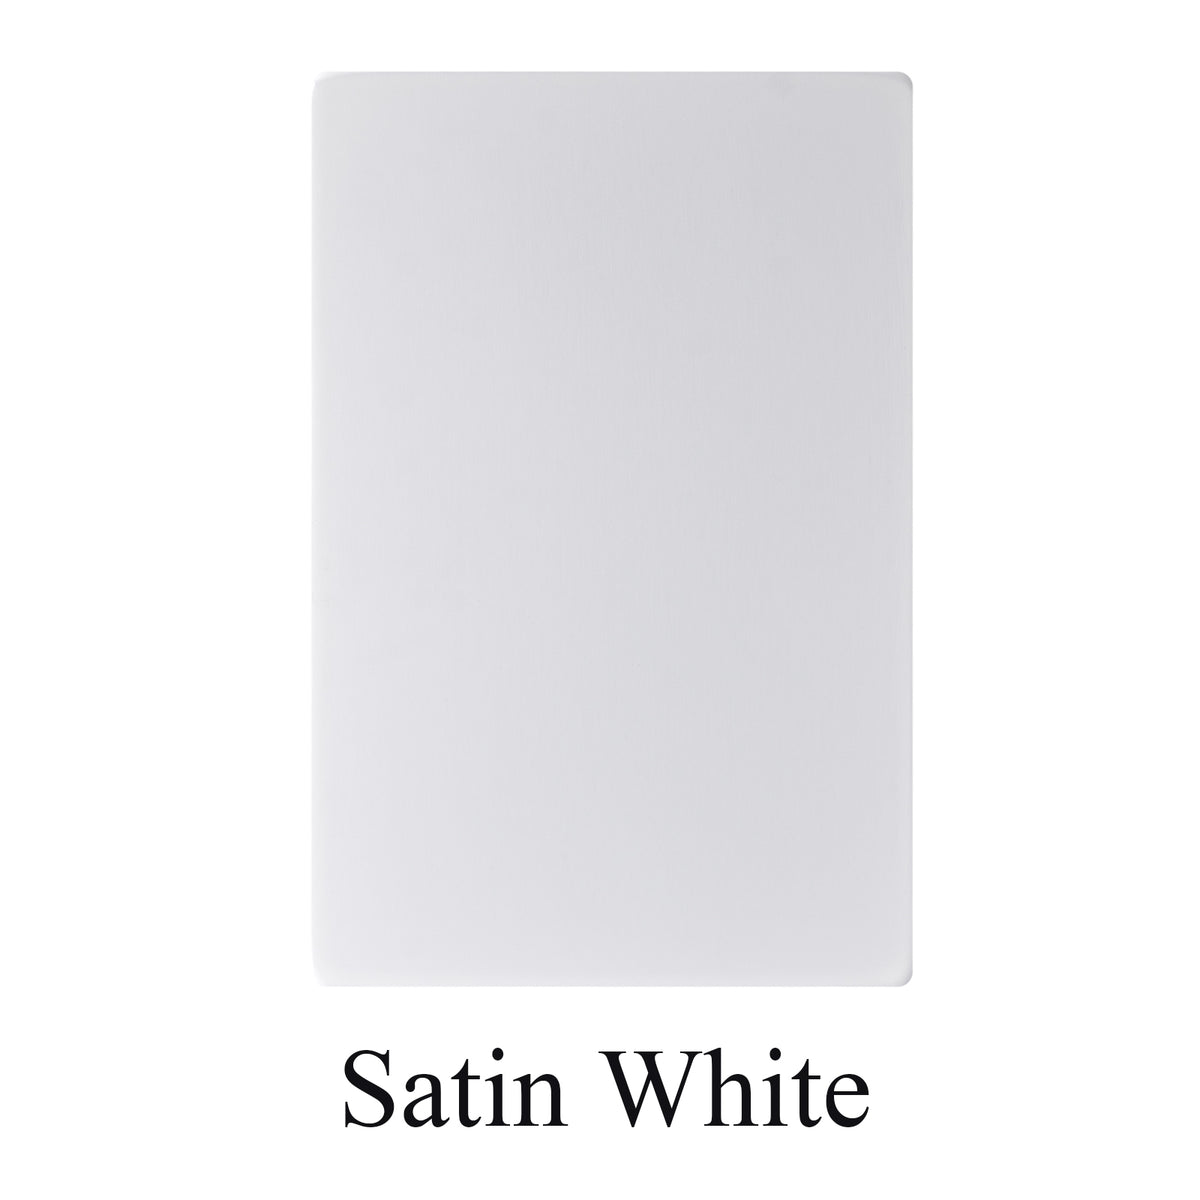 Akicon Satin White Stainless Steel Sample